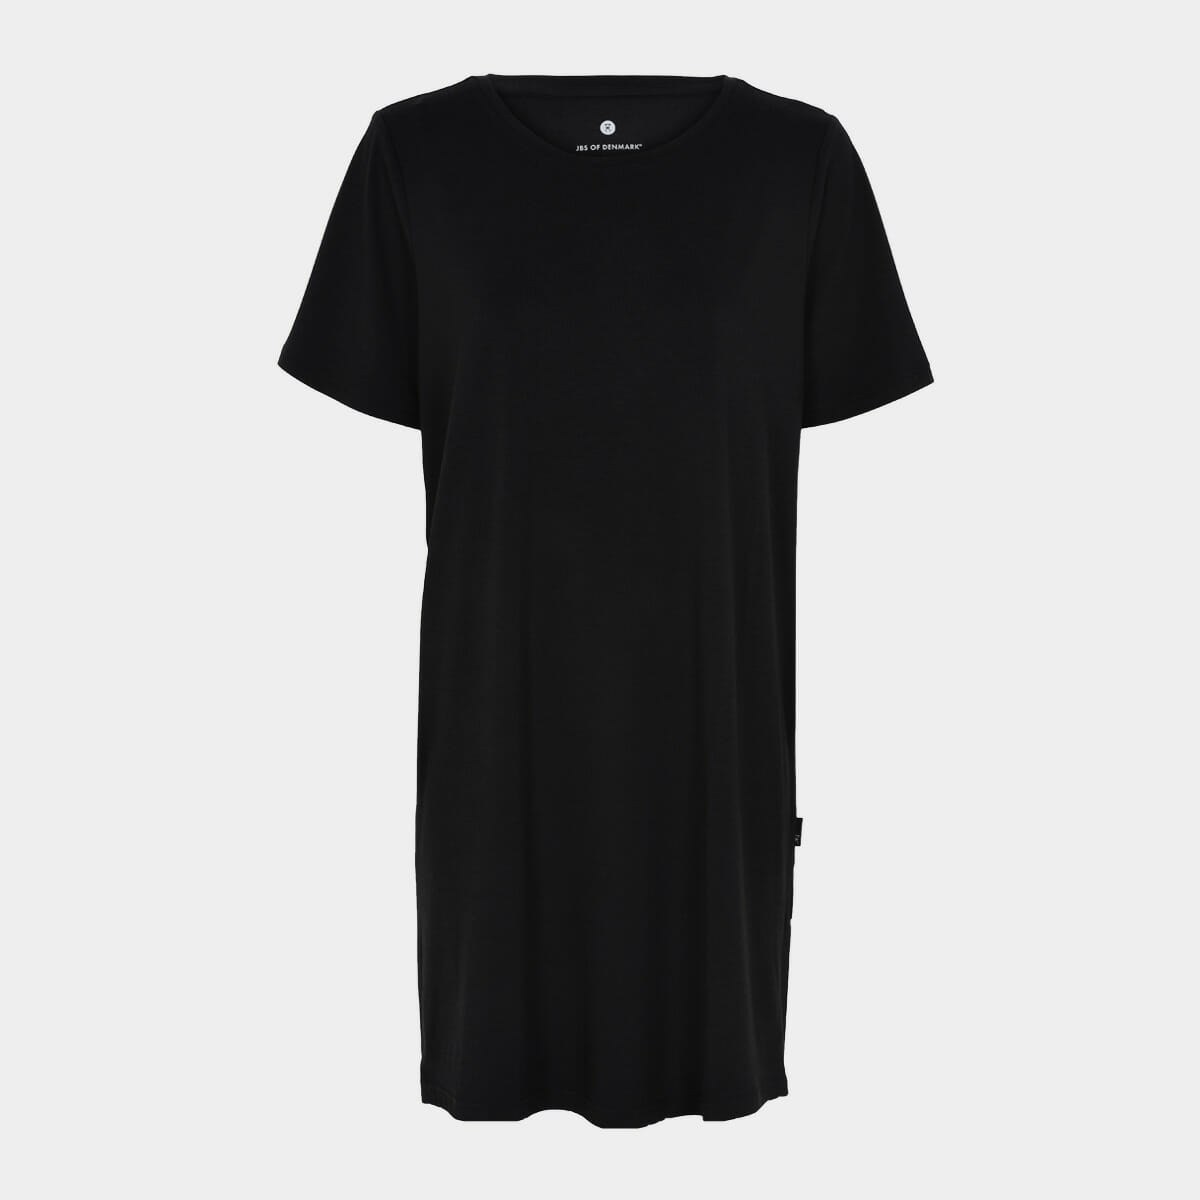 Revision G kontrollere Bambus T-shirt kjole i sort til damer fra JBS of Denmark – Bambustøj.dk